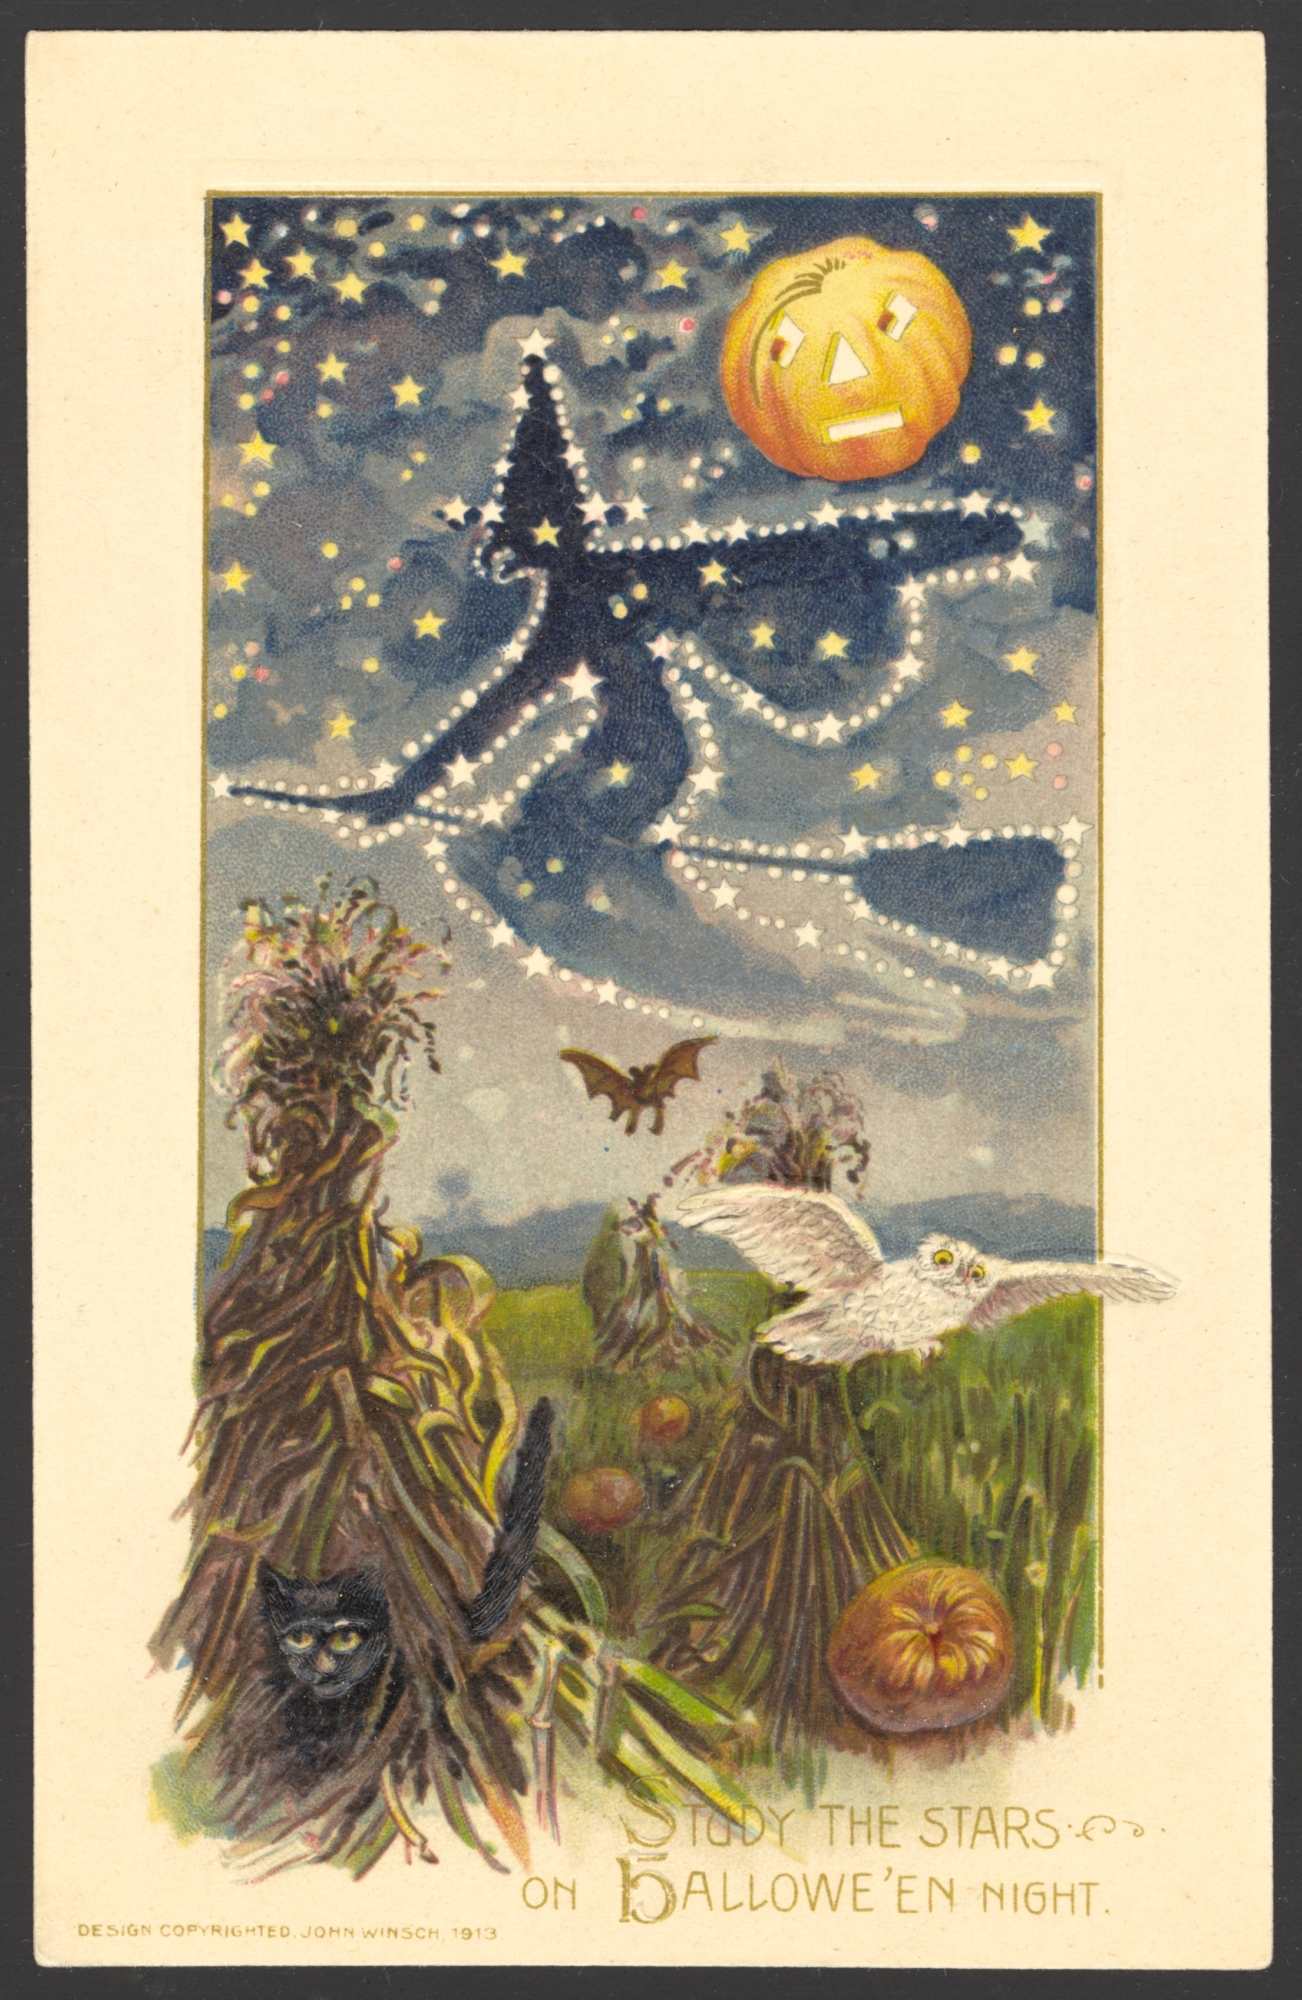 Winsch Halloween Postcard copyright 1913